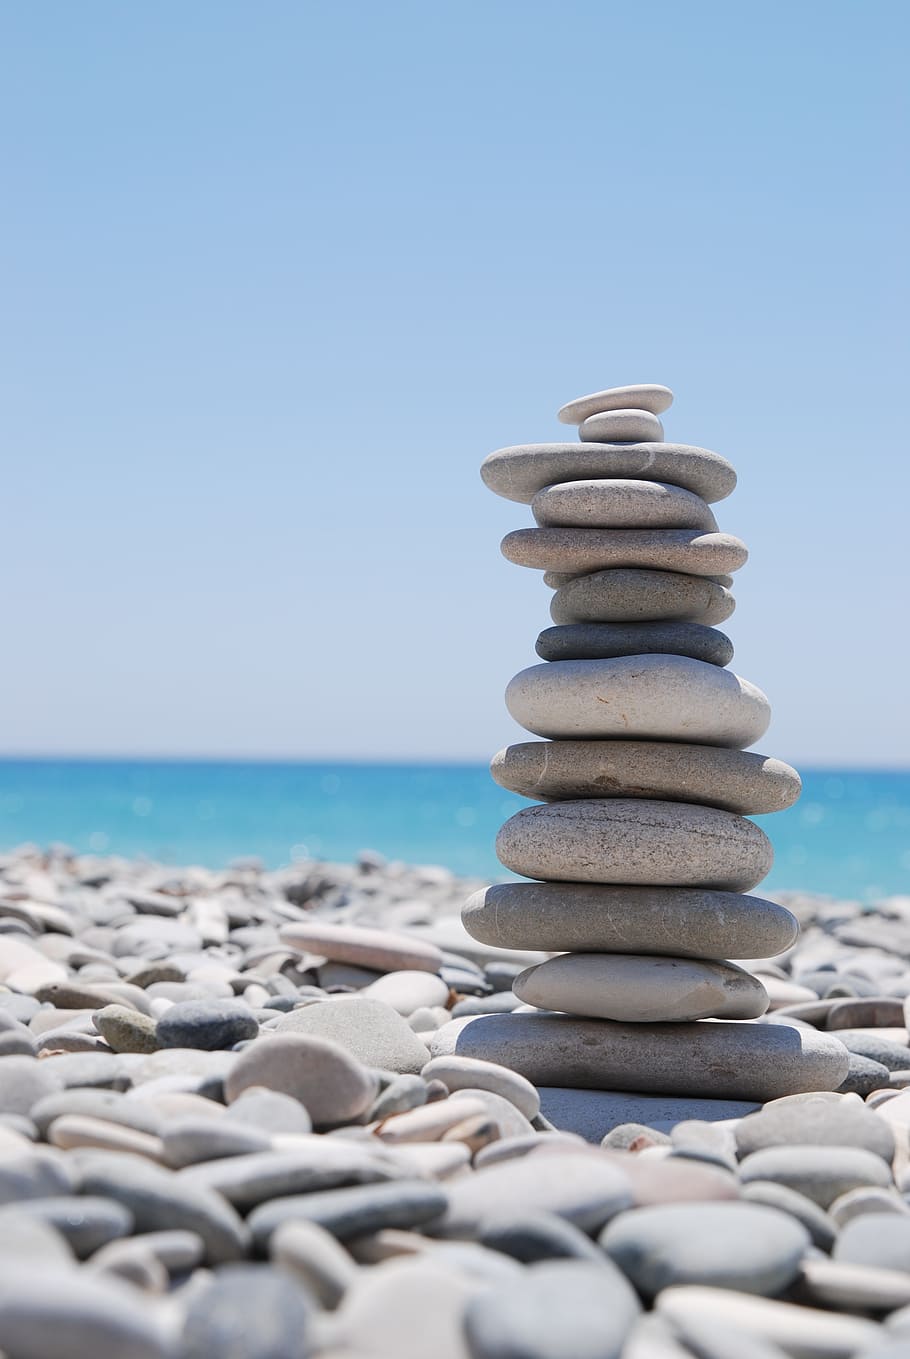 pila, piedras, al lado, mar, zen, guijarro, equilibrio, zen-like, piedra - Objeto, estabilidad